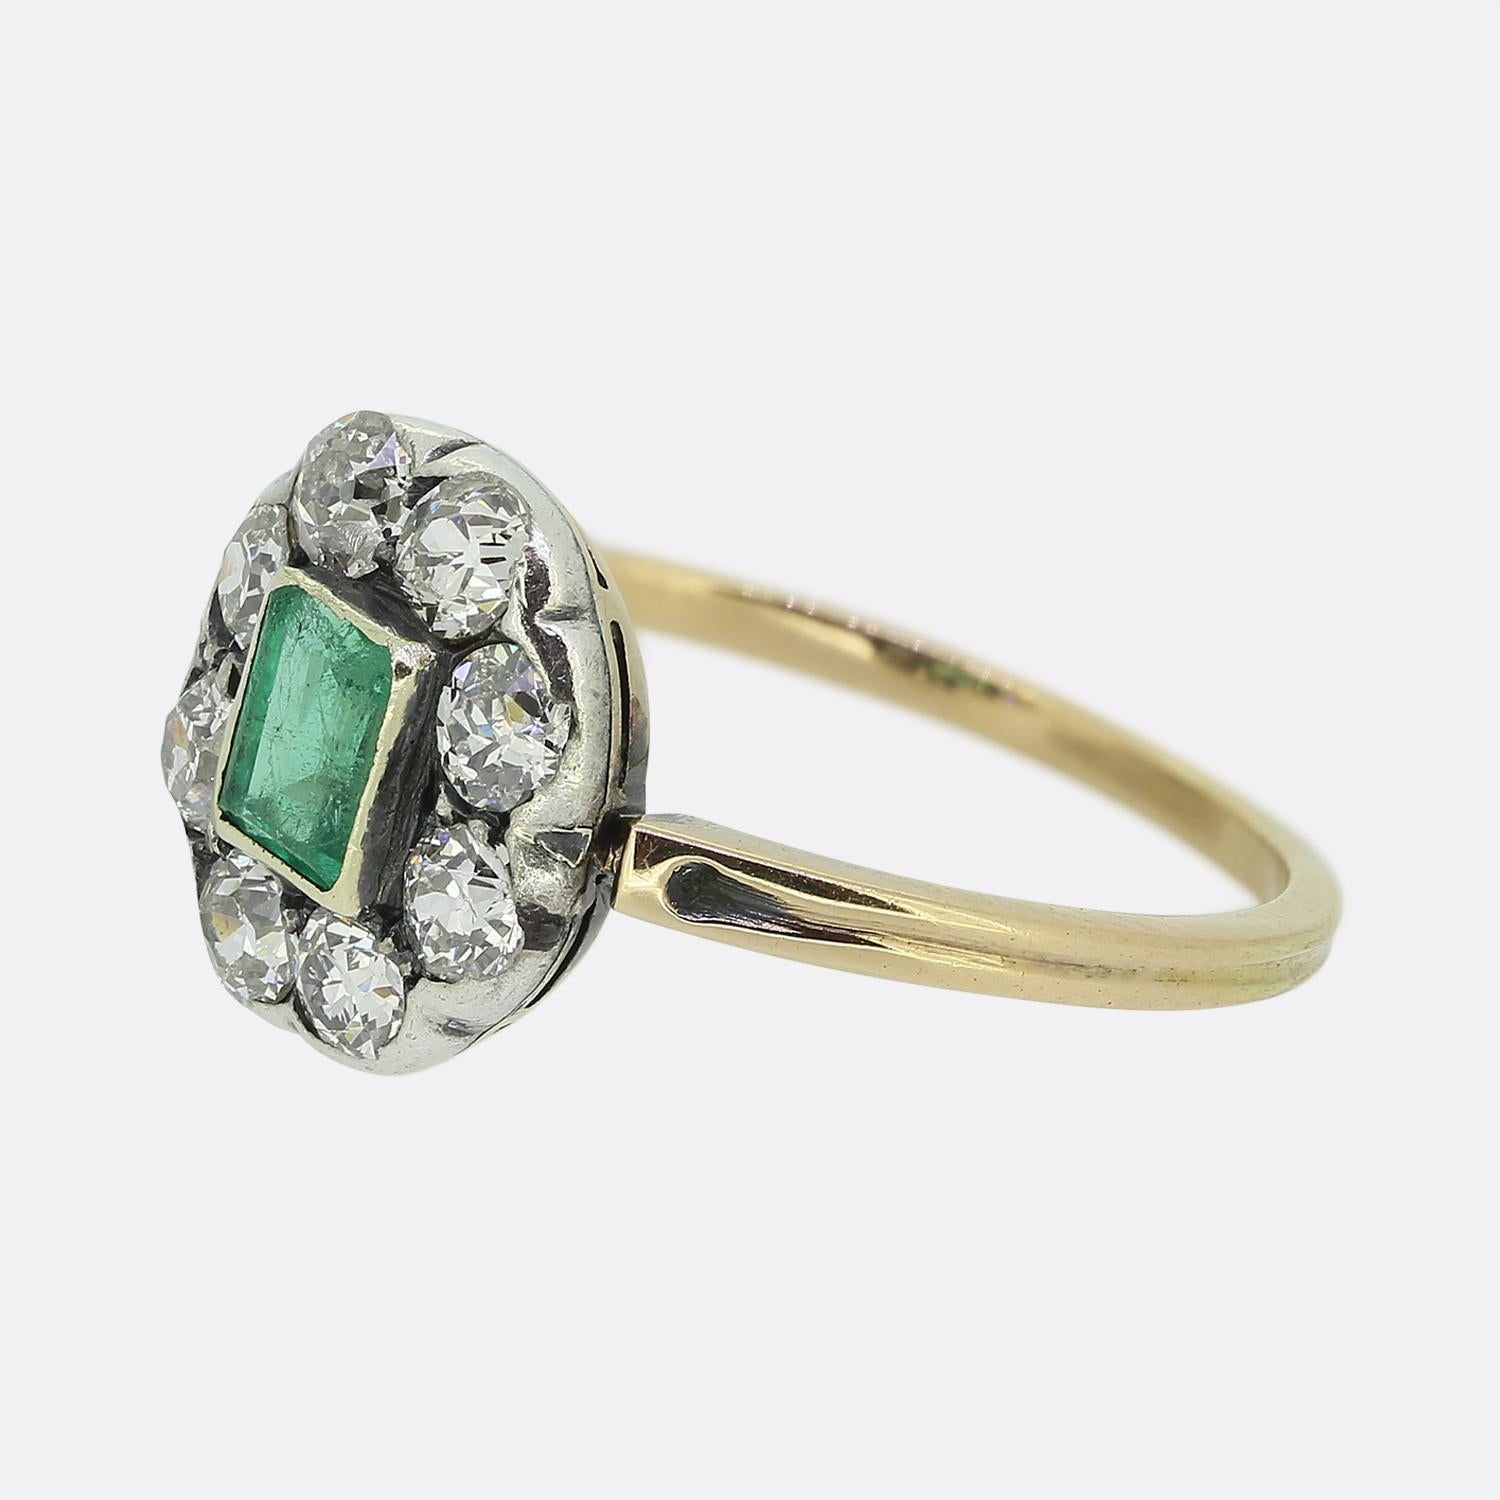 Hier sehen Sie einen wunderschönen Smaragd- und Diamantring aus der viktorianischen Zeit. Dieses antike Stück zeigt einen einzelnen natürlichen Smaragd im Smaragdschliff, der leicht erhöht in der Mitte des Gesichts in einer Fassung im Lünettenstil